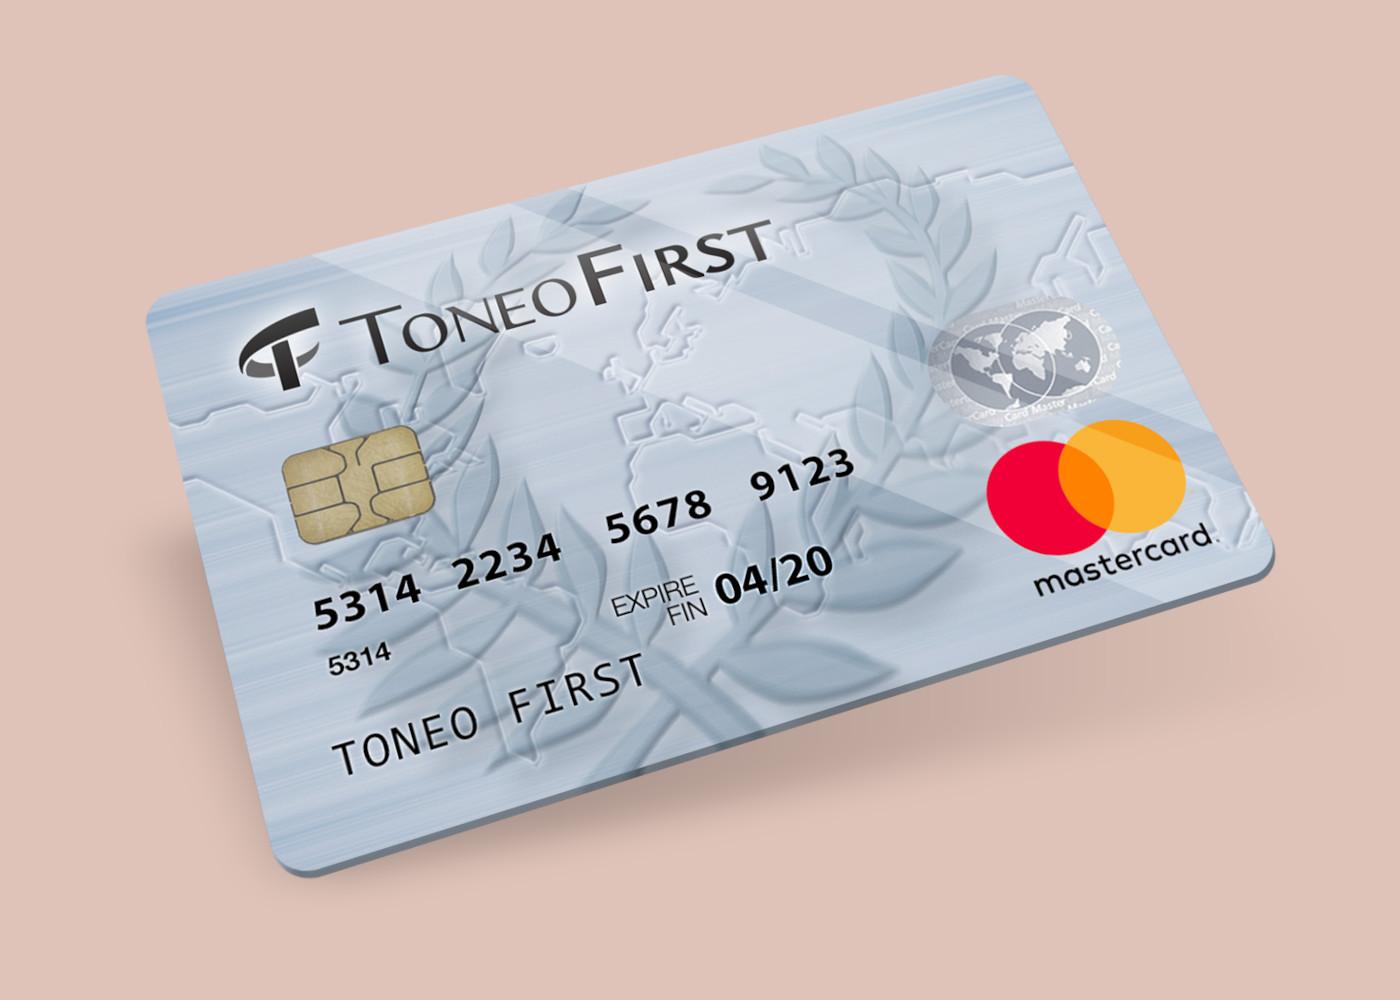 Toneo First Mastercard €15 Gift Card EU $19.63